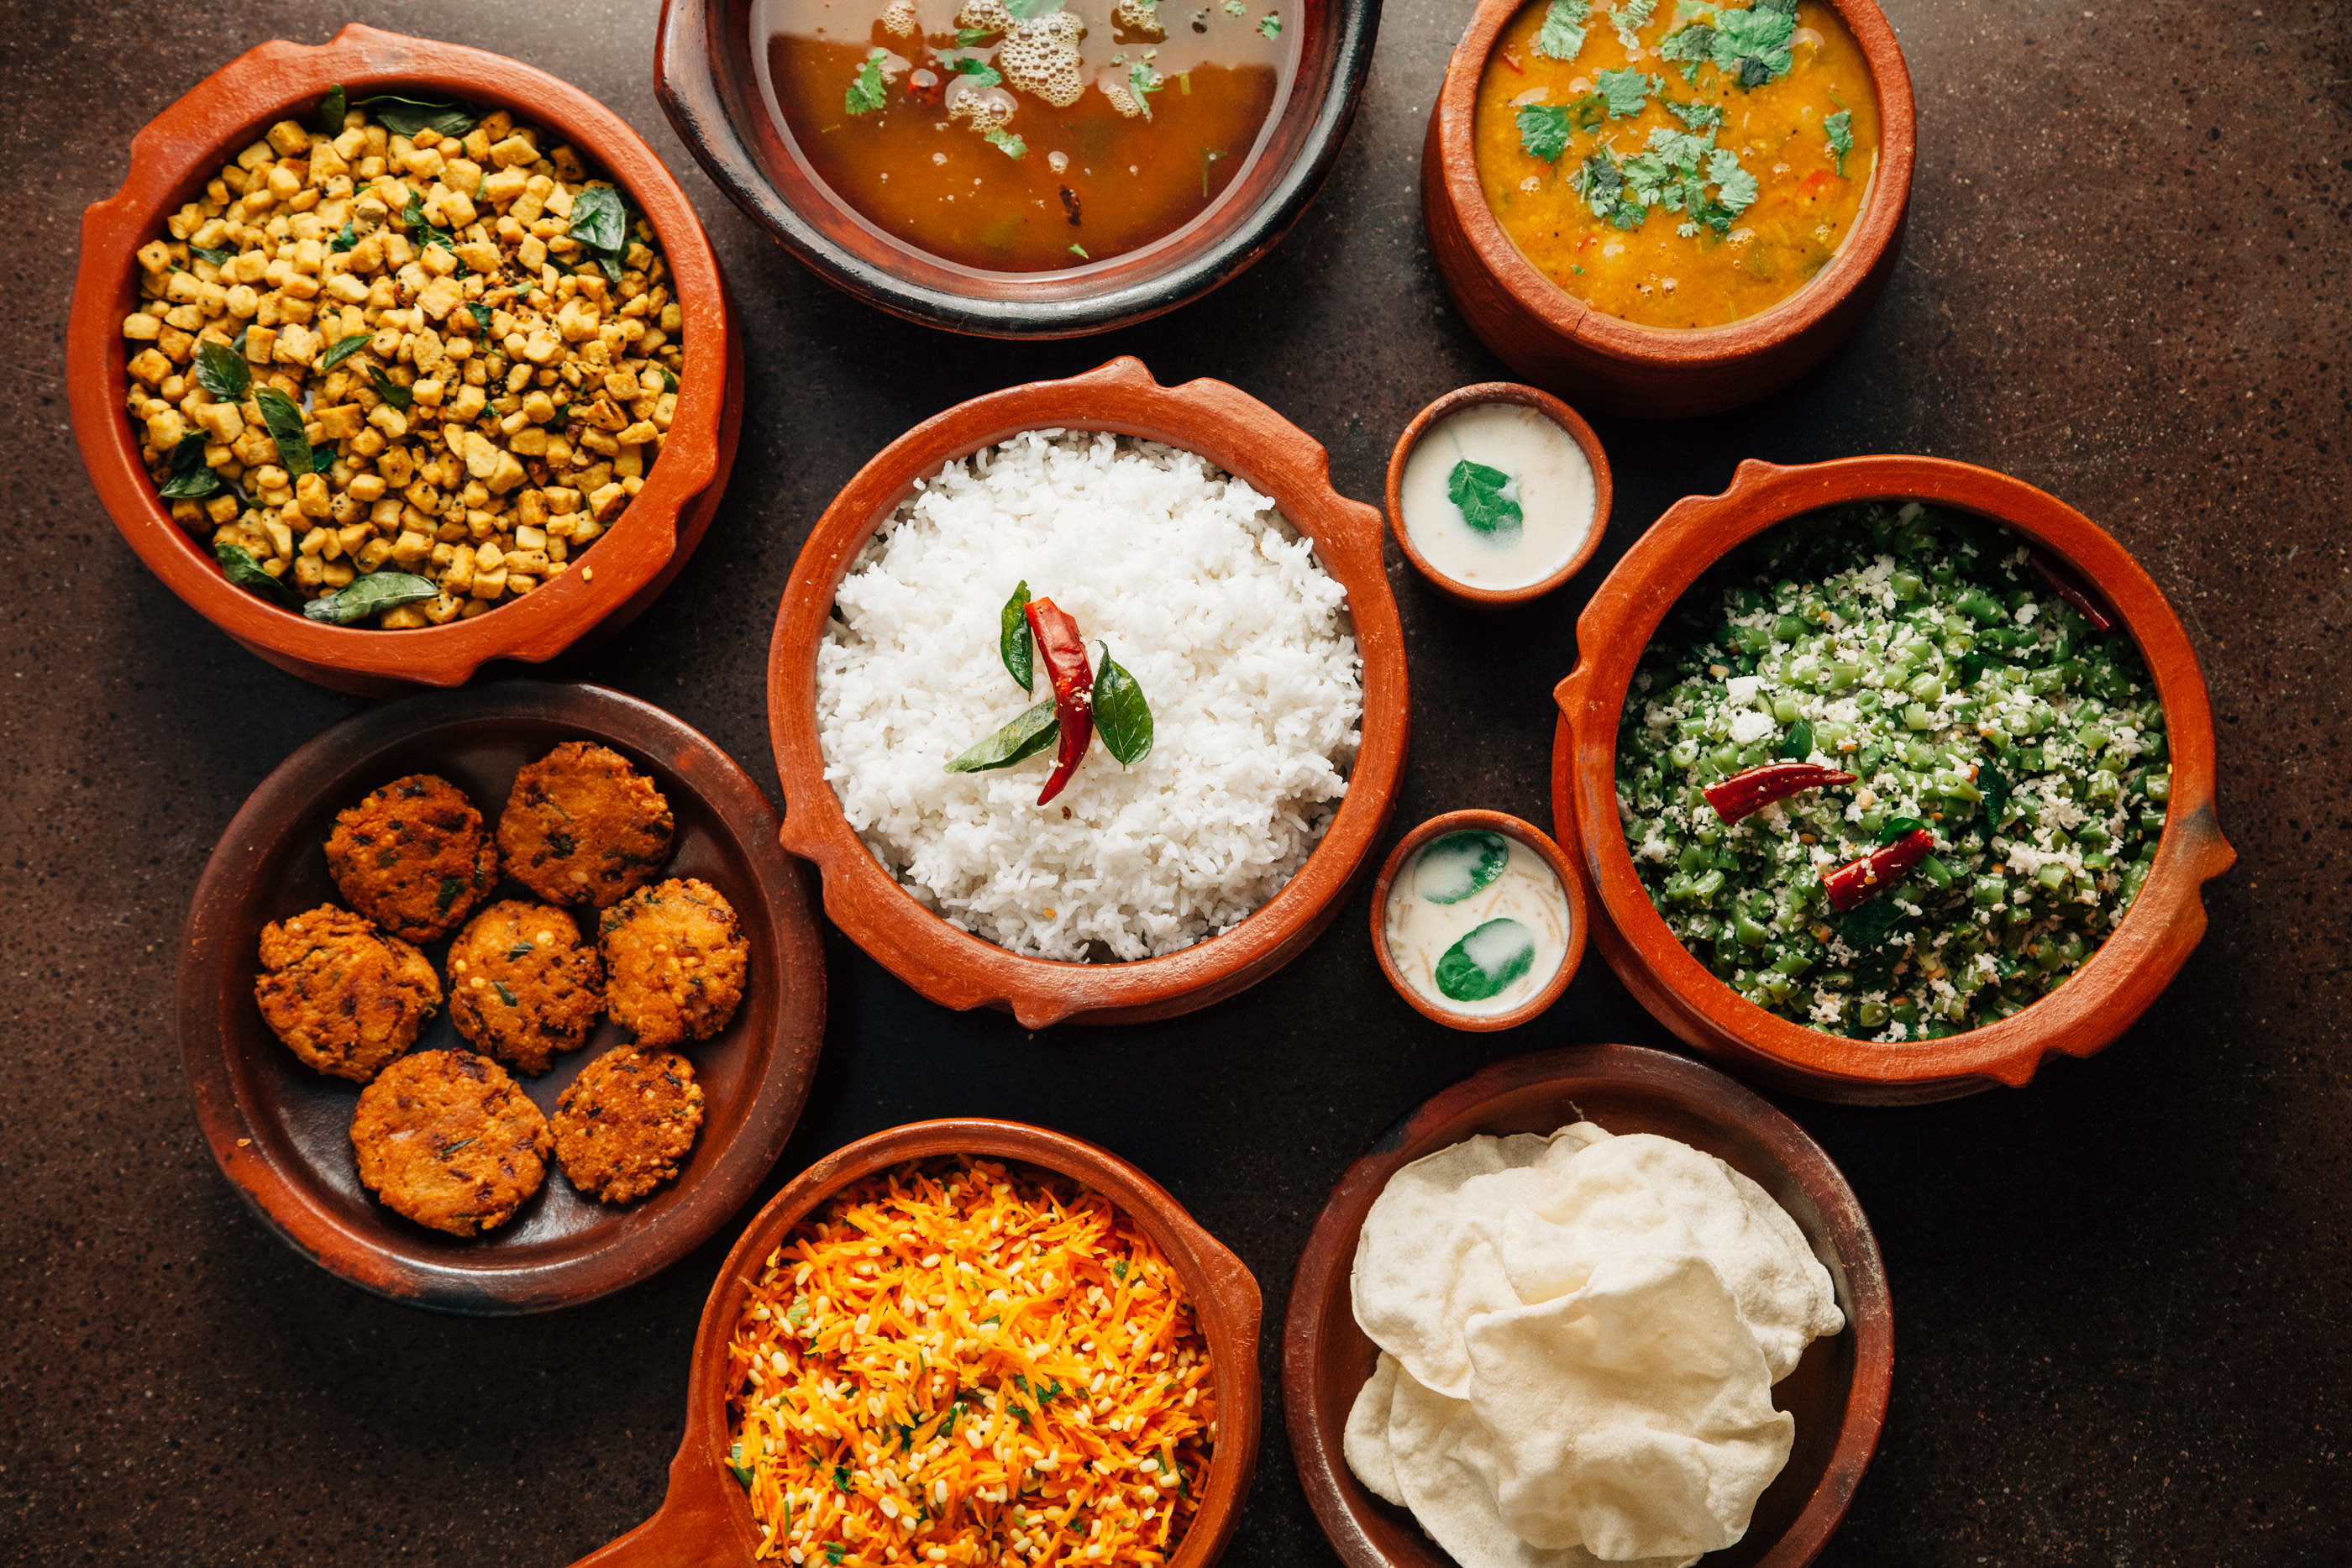 cuisine, food, india, indian, jana, mana